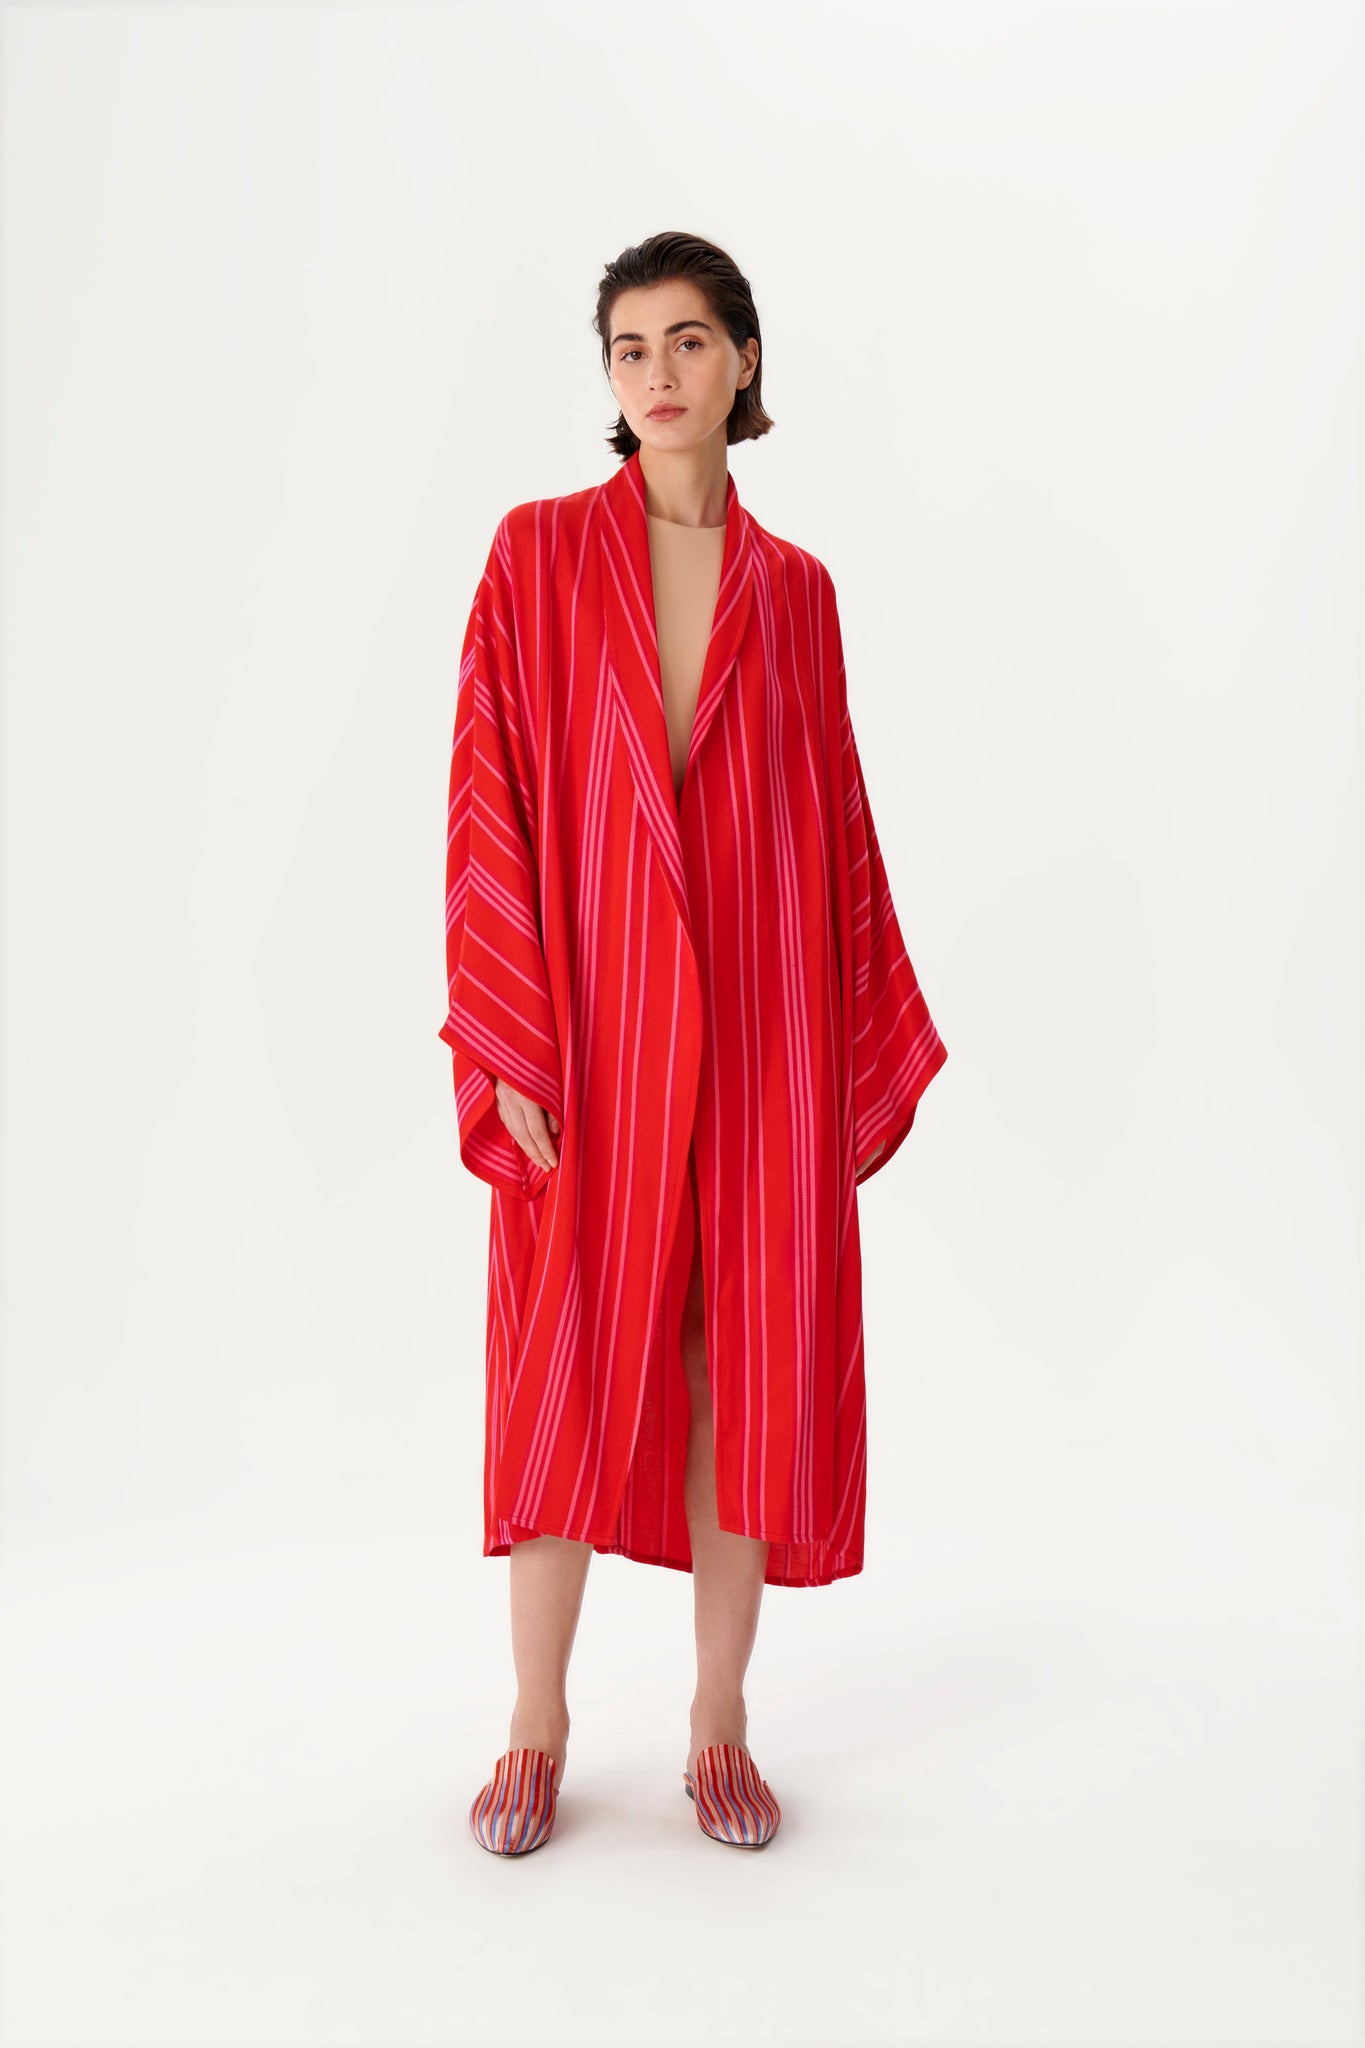 Shawl Collar Red Striped Kimono